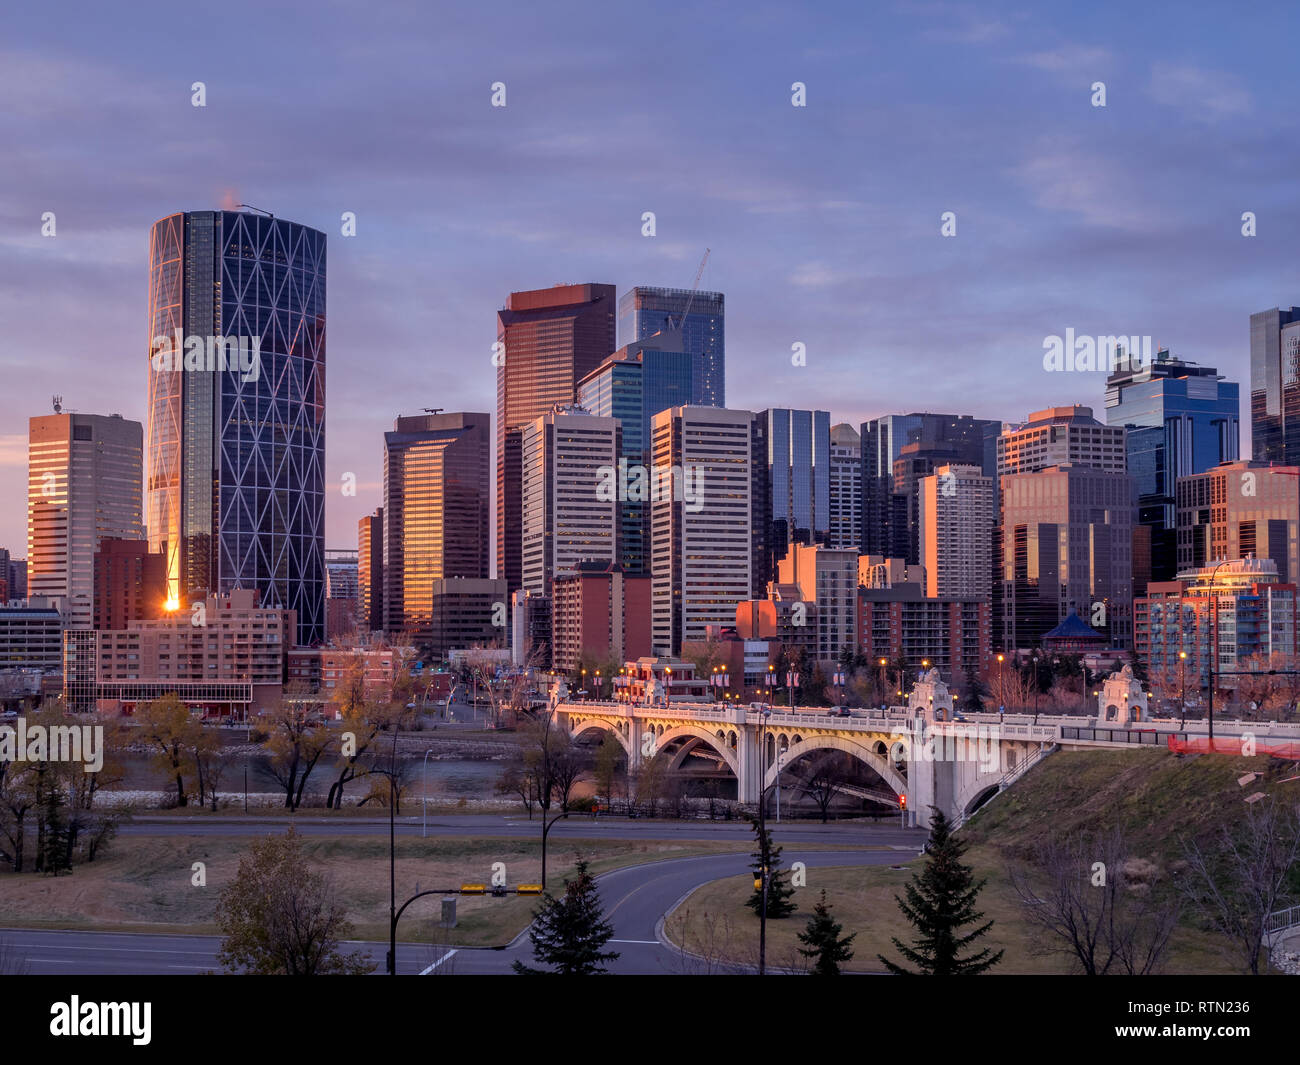 Une vue sur l'horizon au lever du soleil à Calgary, Alberta. Calgary est le foyer de nombreuses sociétés pétrolières. Ca;Gary est situé sur la rivière Bow en Alberta, Canada. Banque D'Images